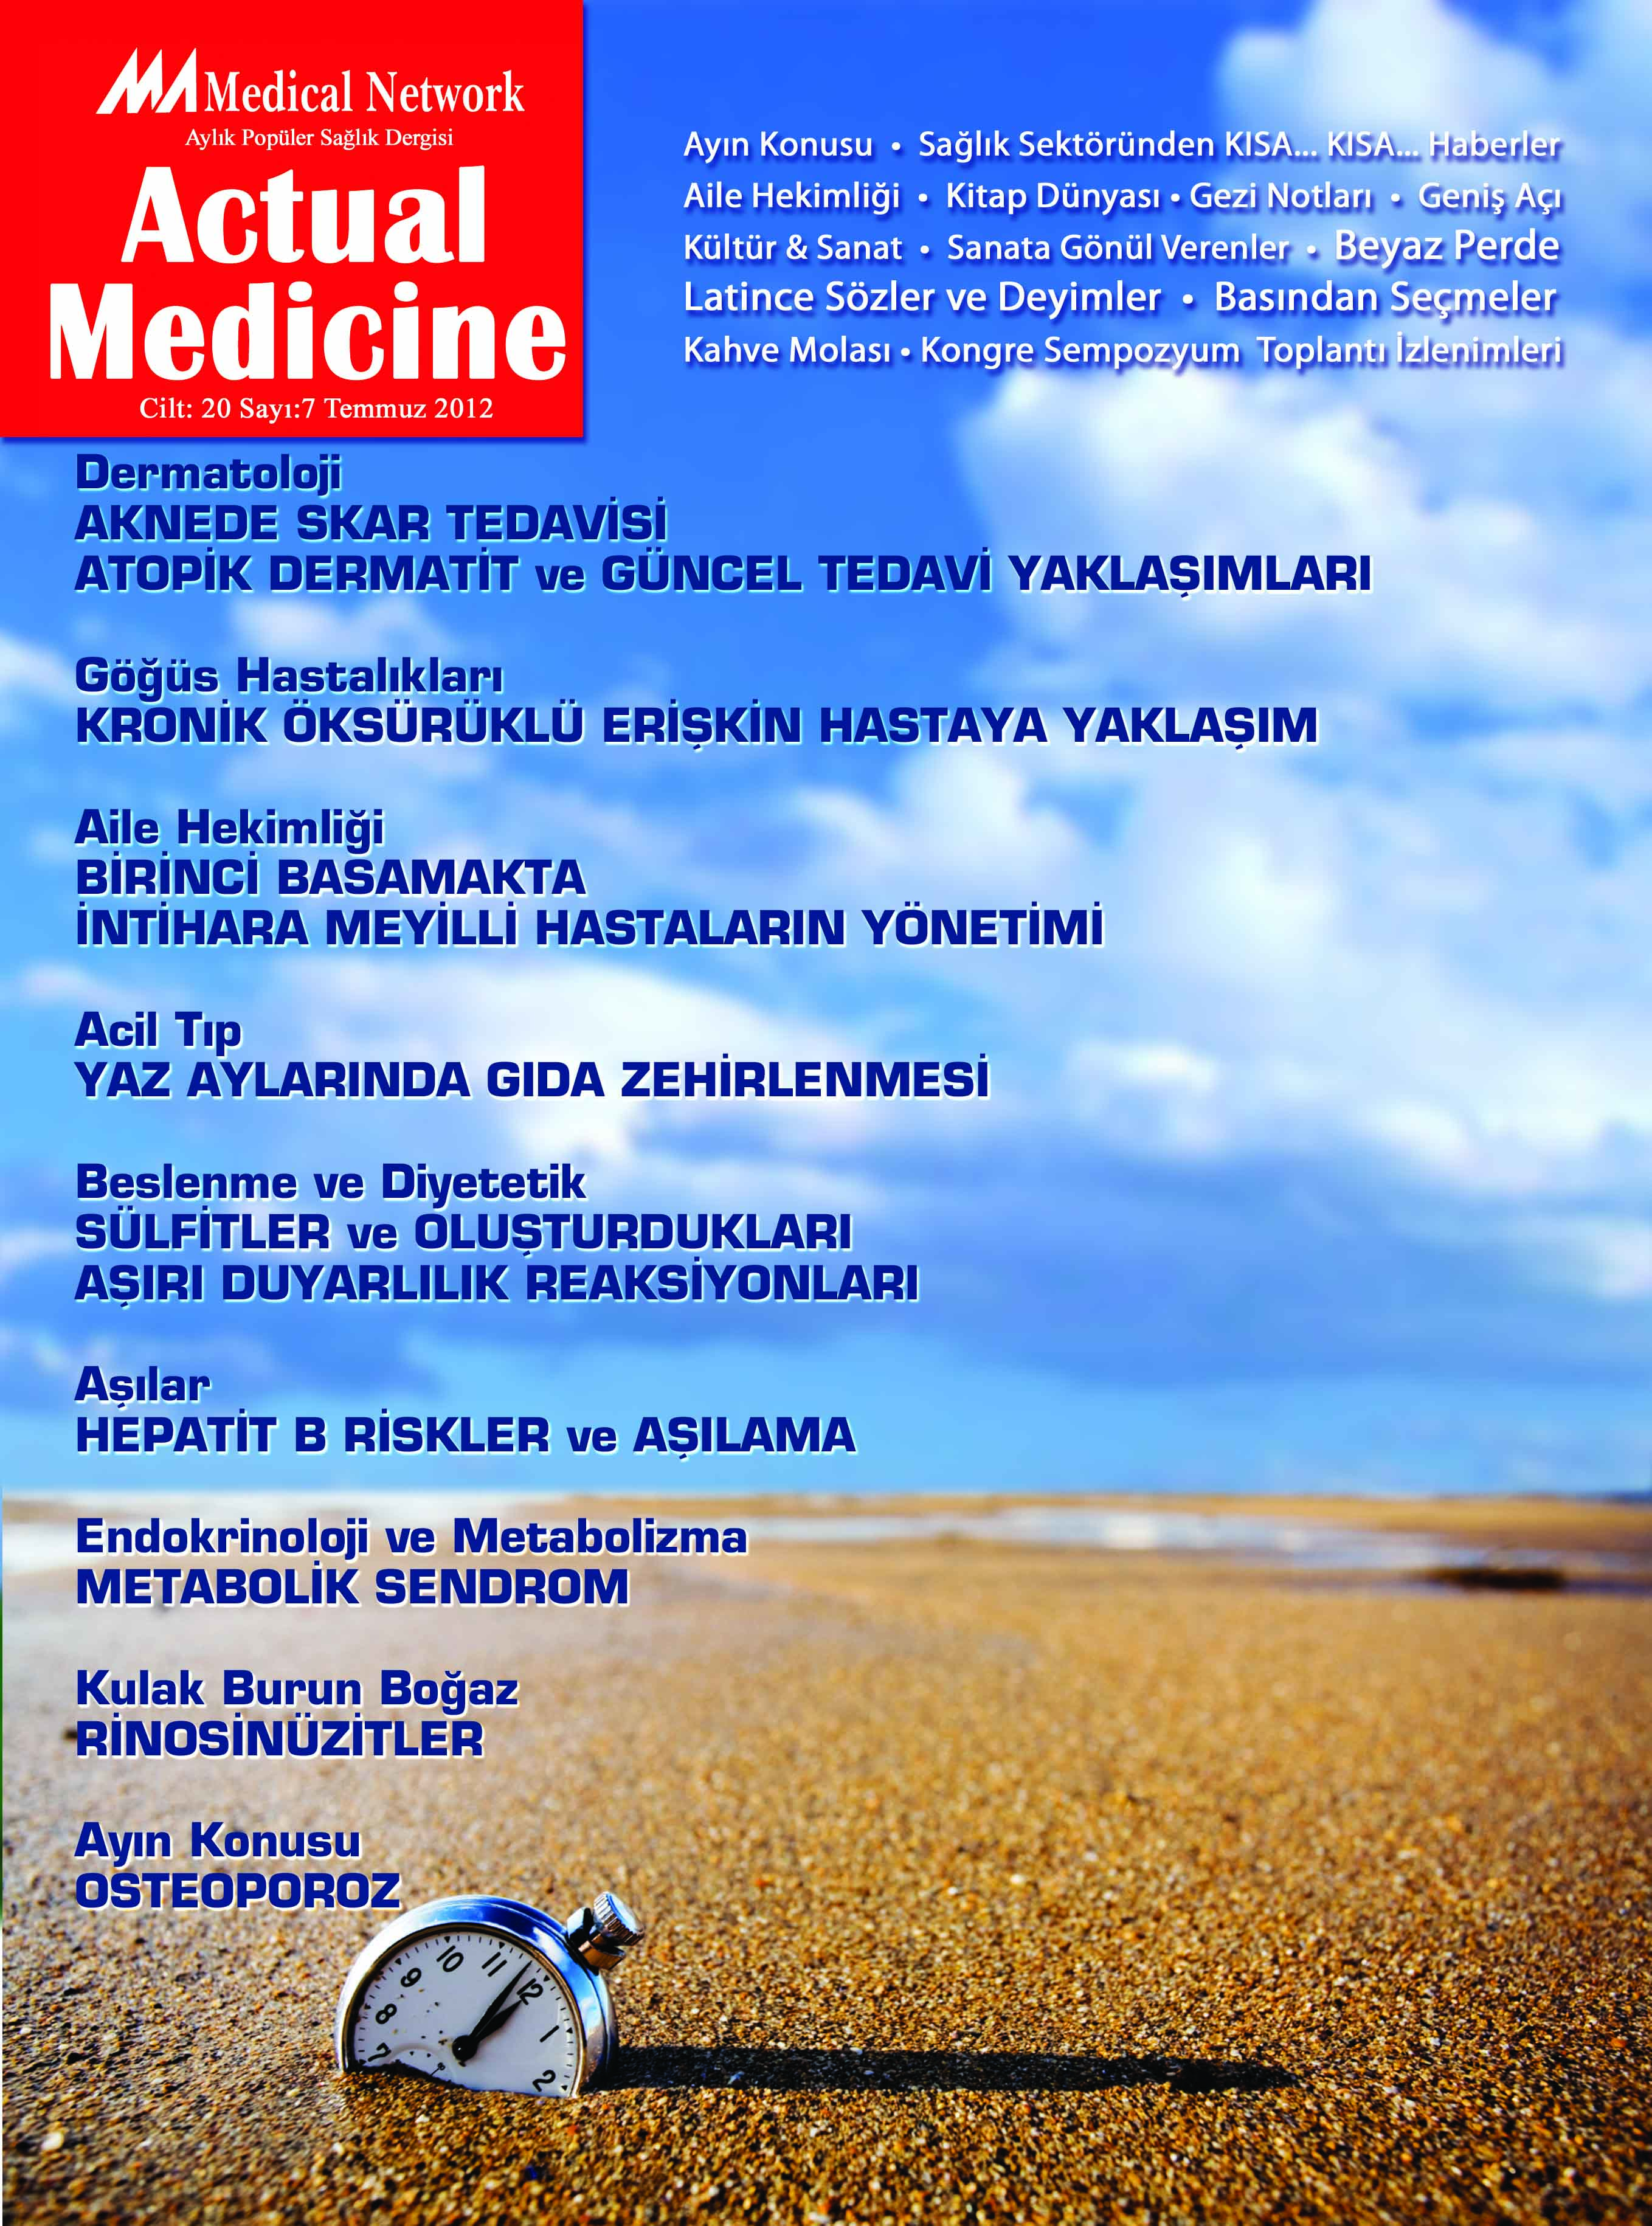 <p>Actual Medicine Cilt: 20 Say: 7 2012</p>